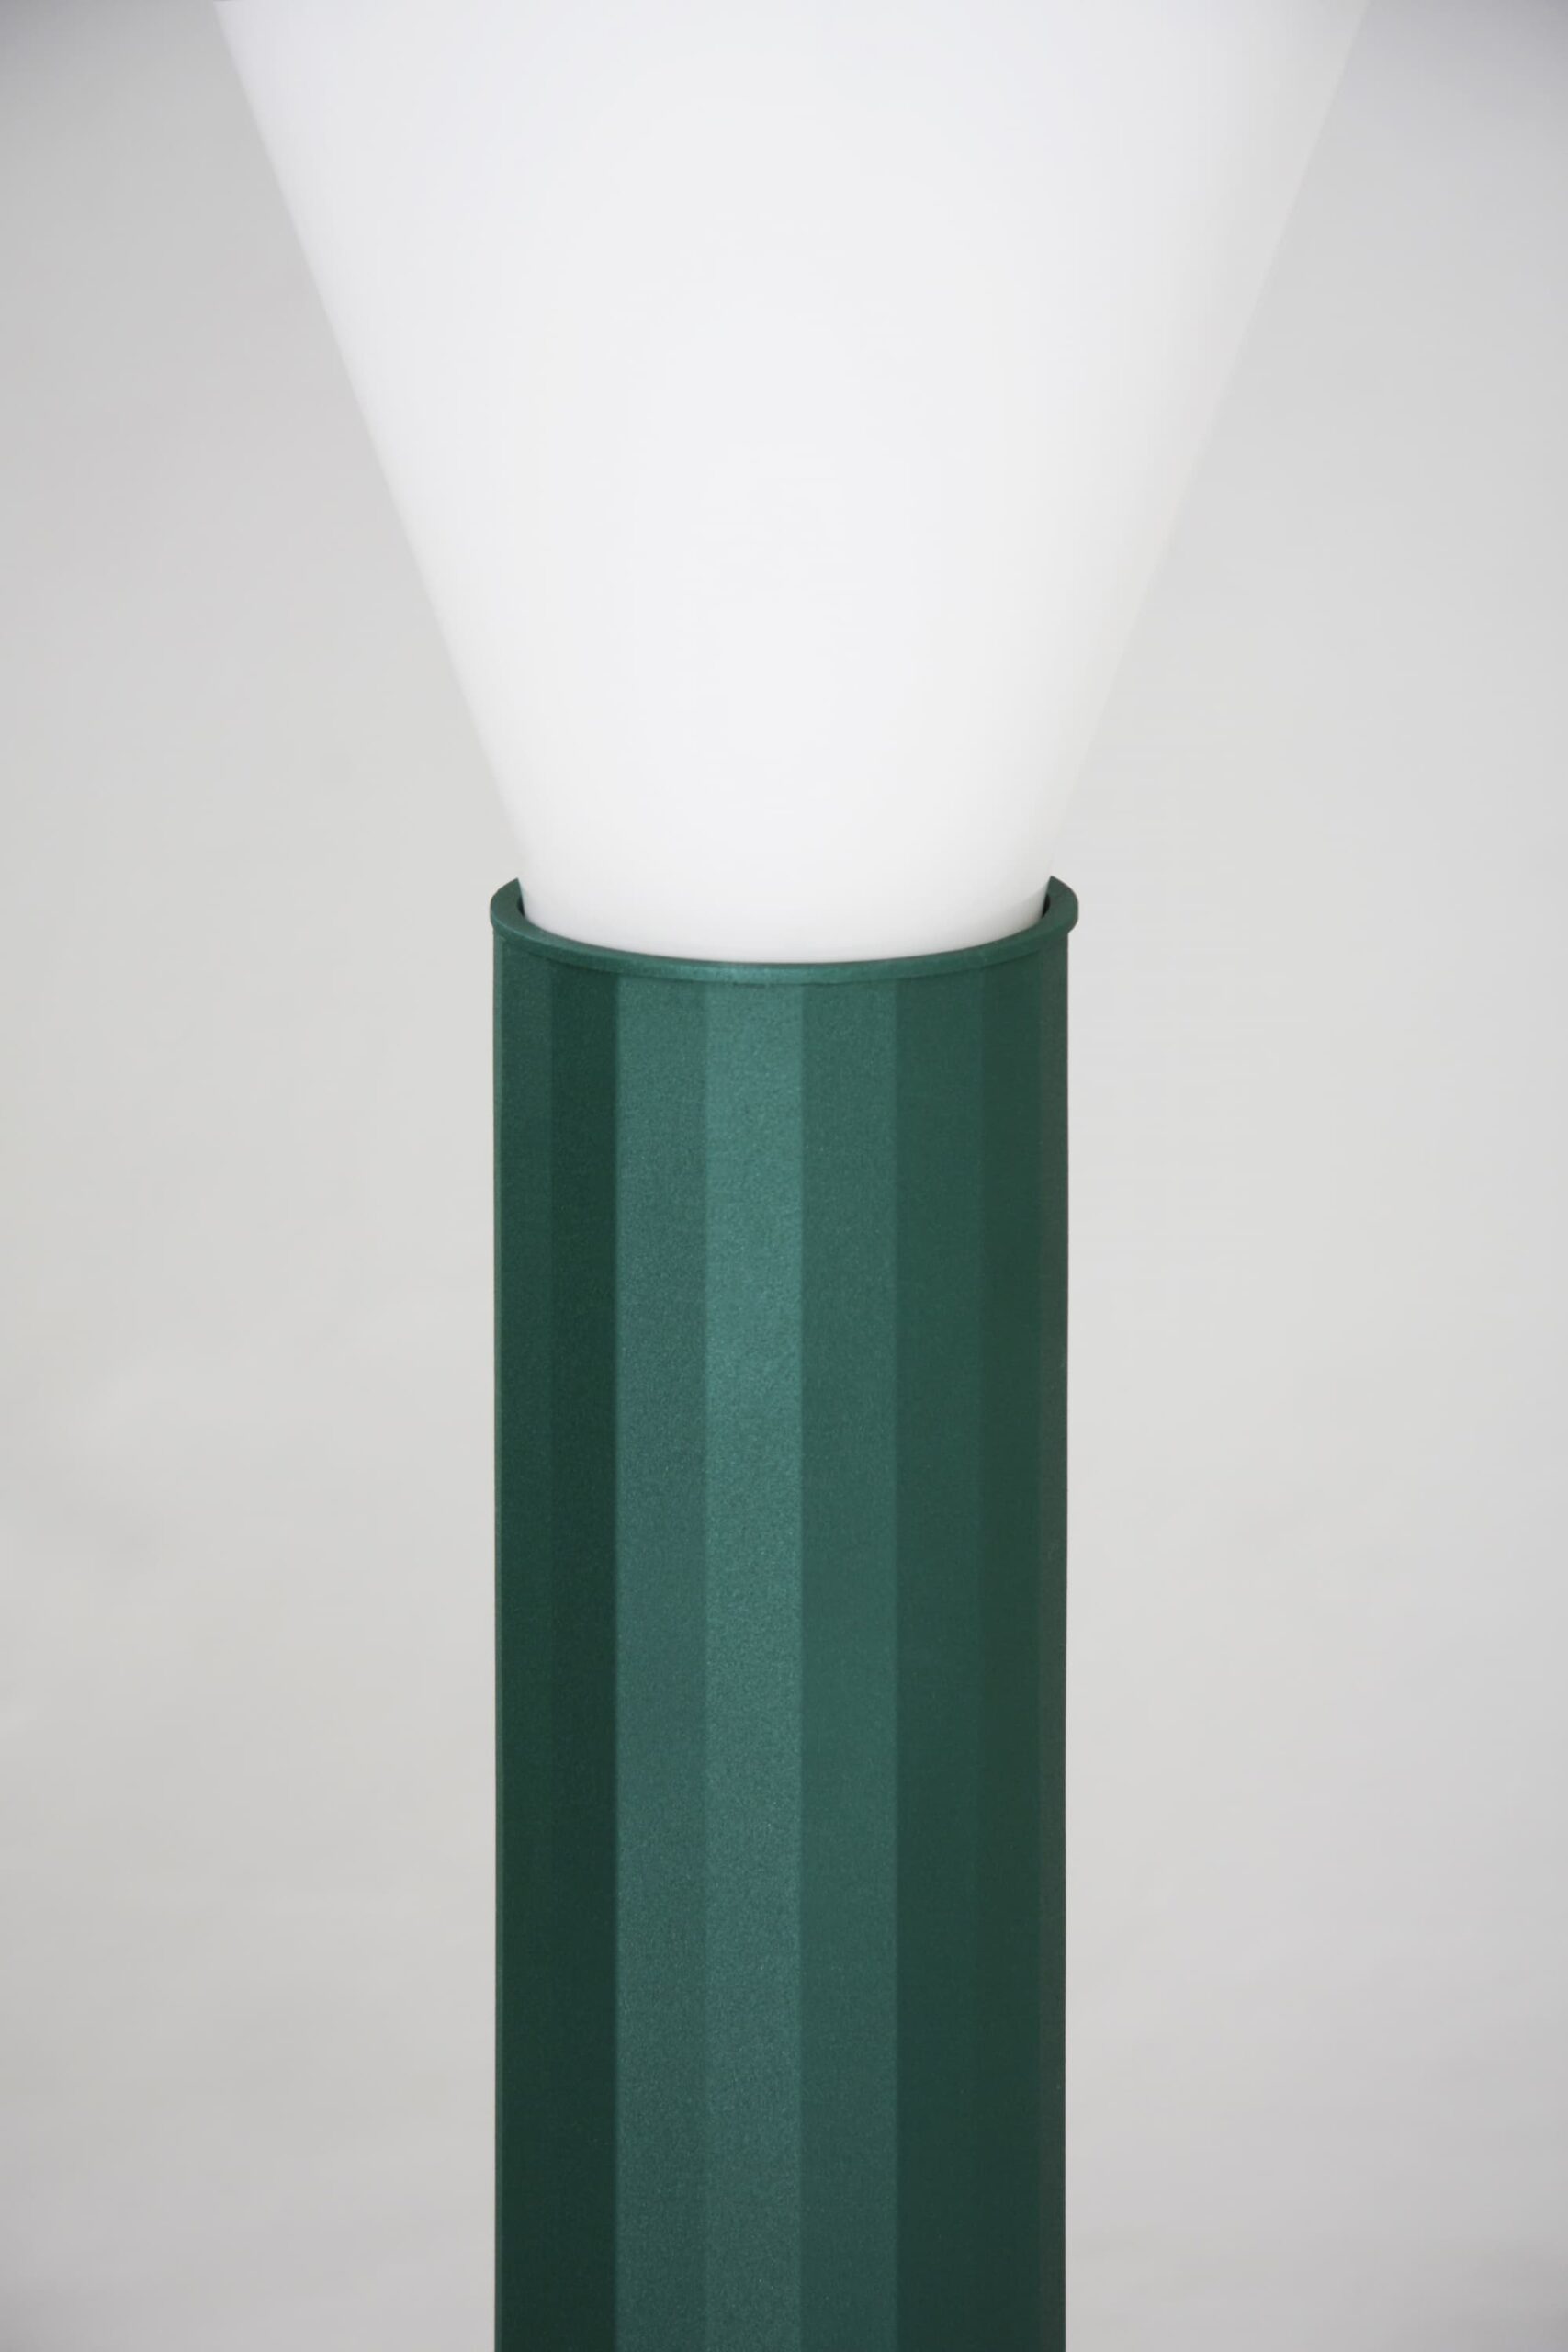 LAMP1